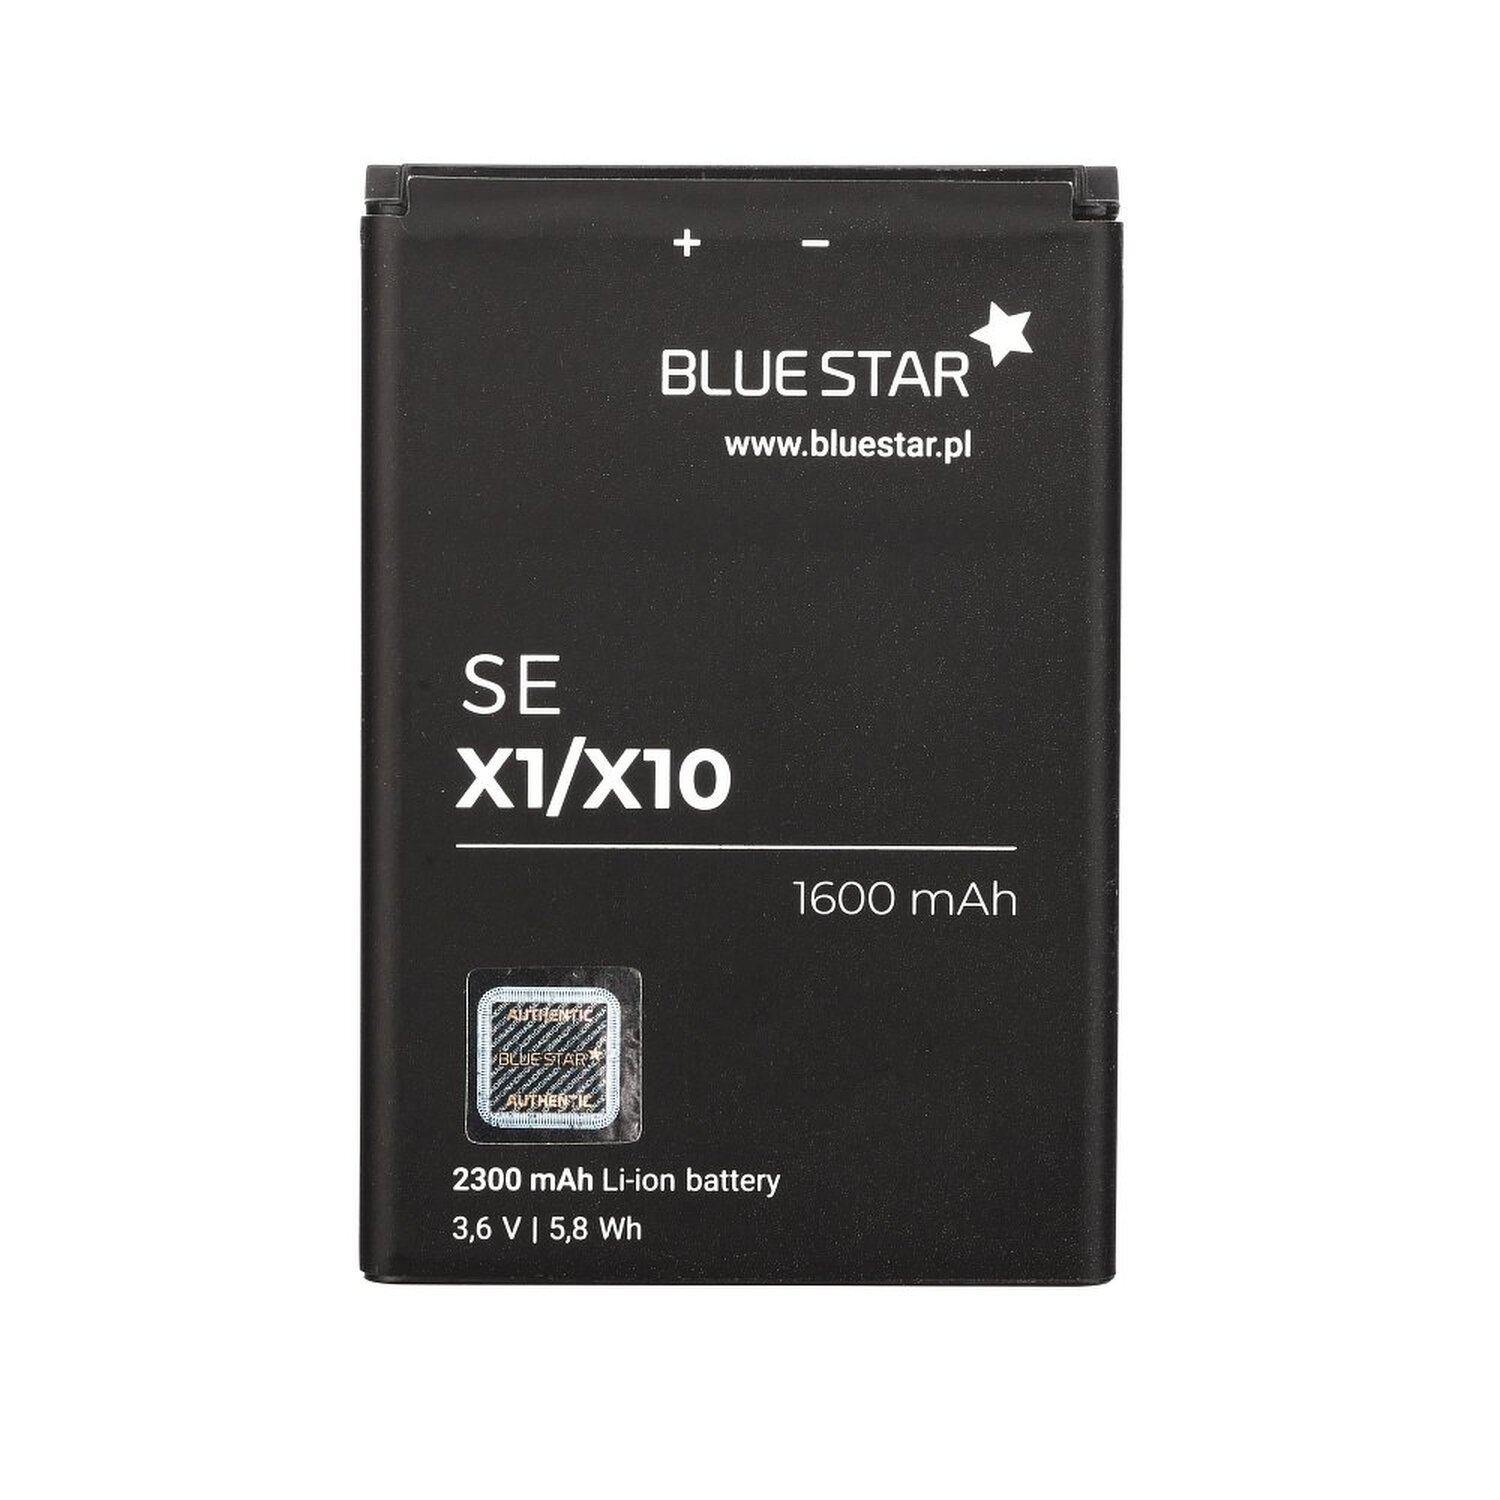 BLUESTAR Akku Sony Xperia Handyakku für X1 Li-Ion / X10